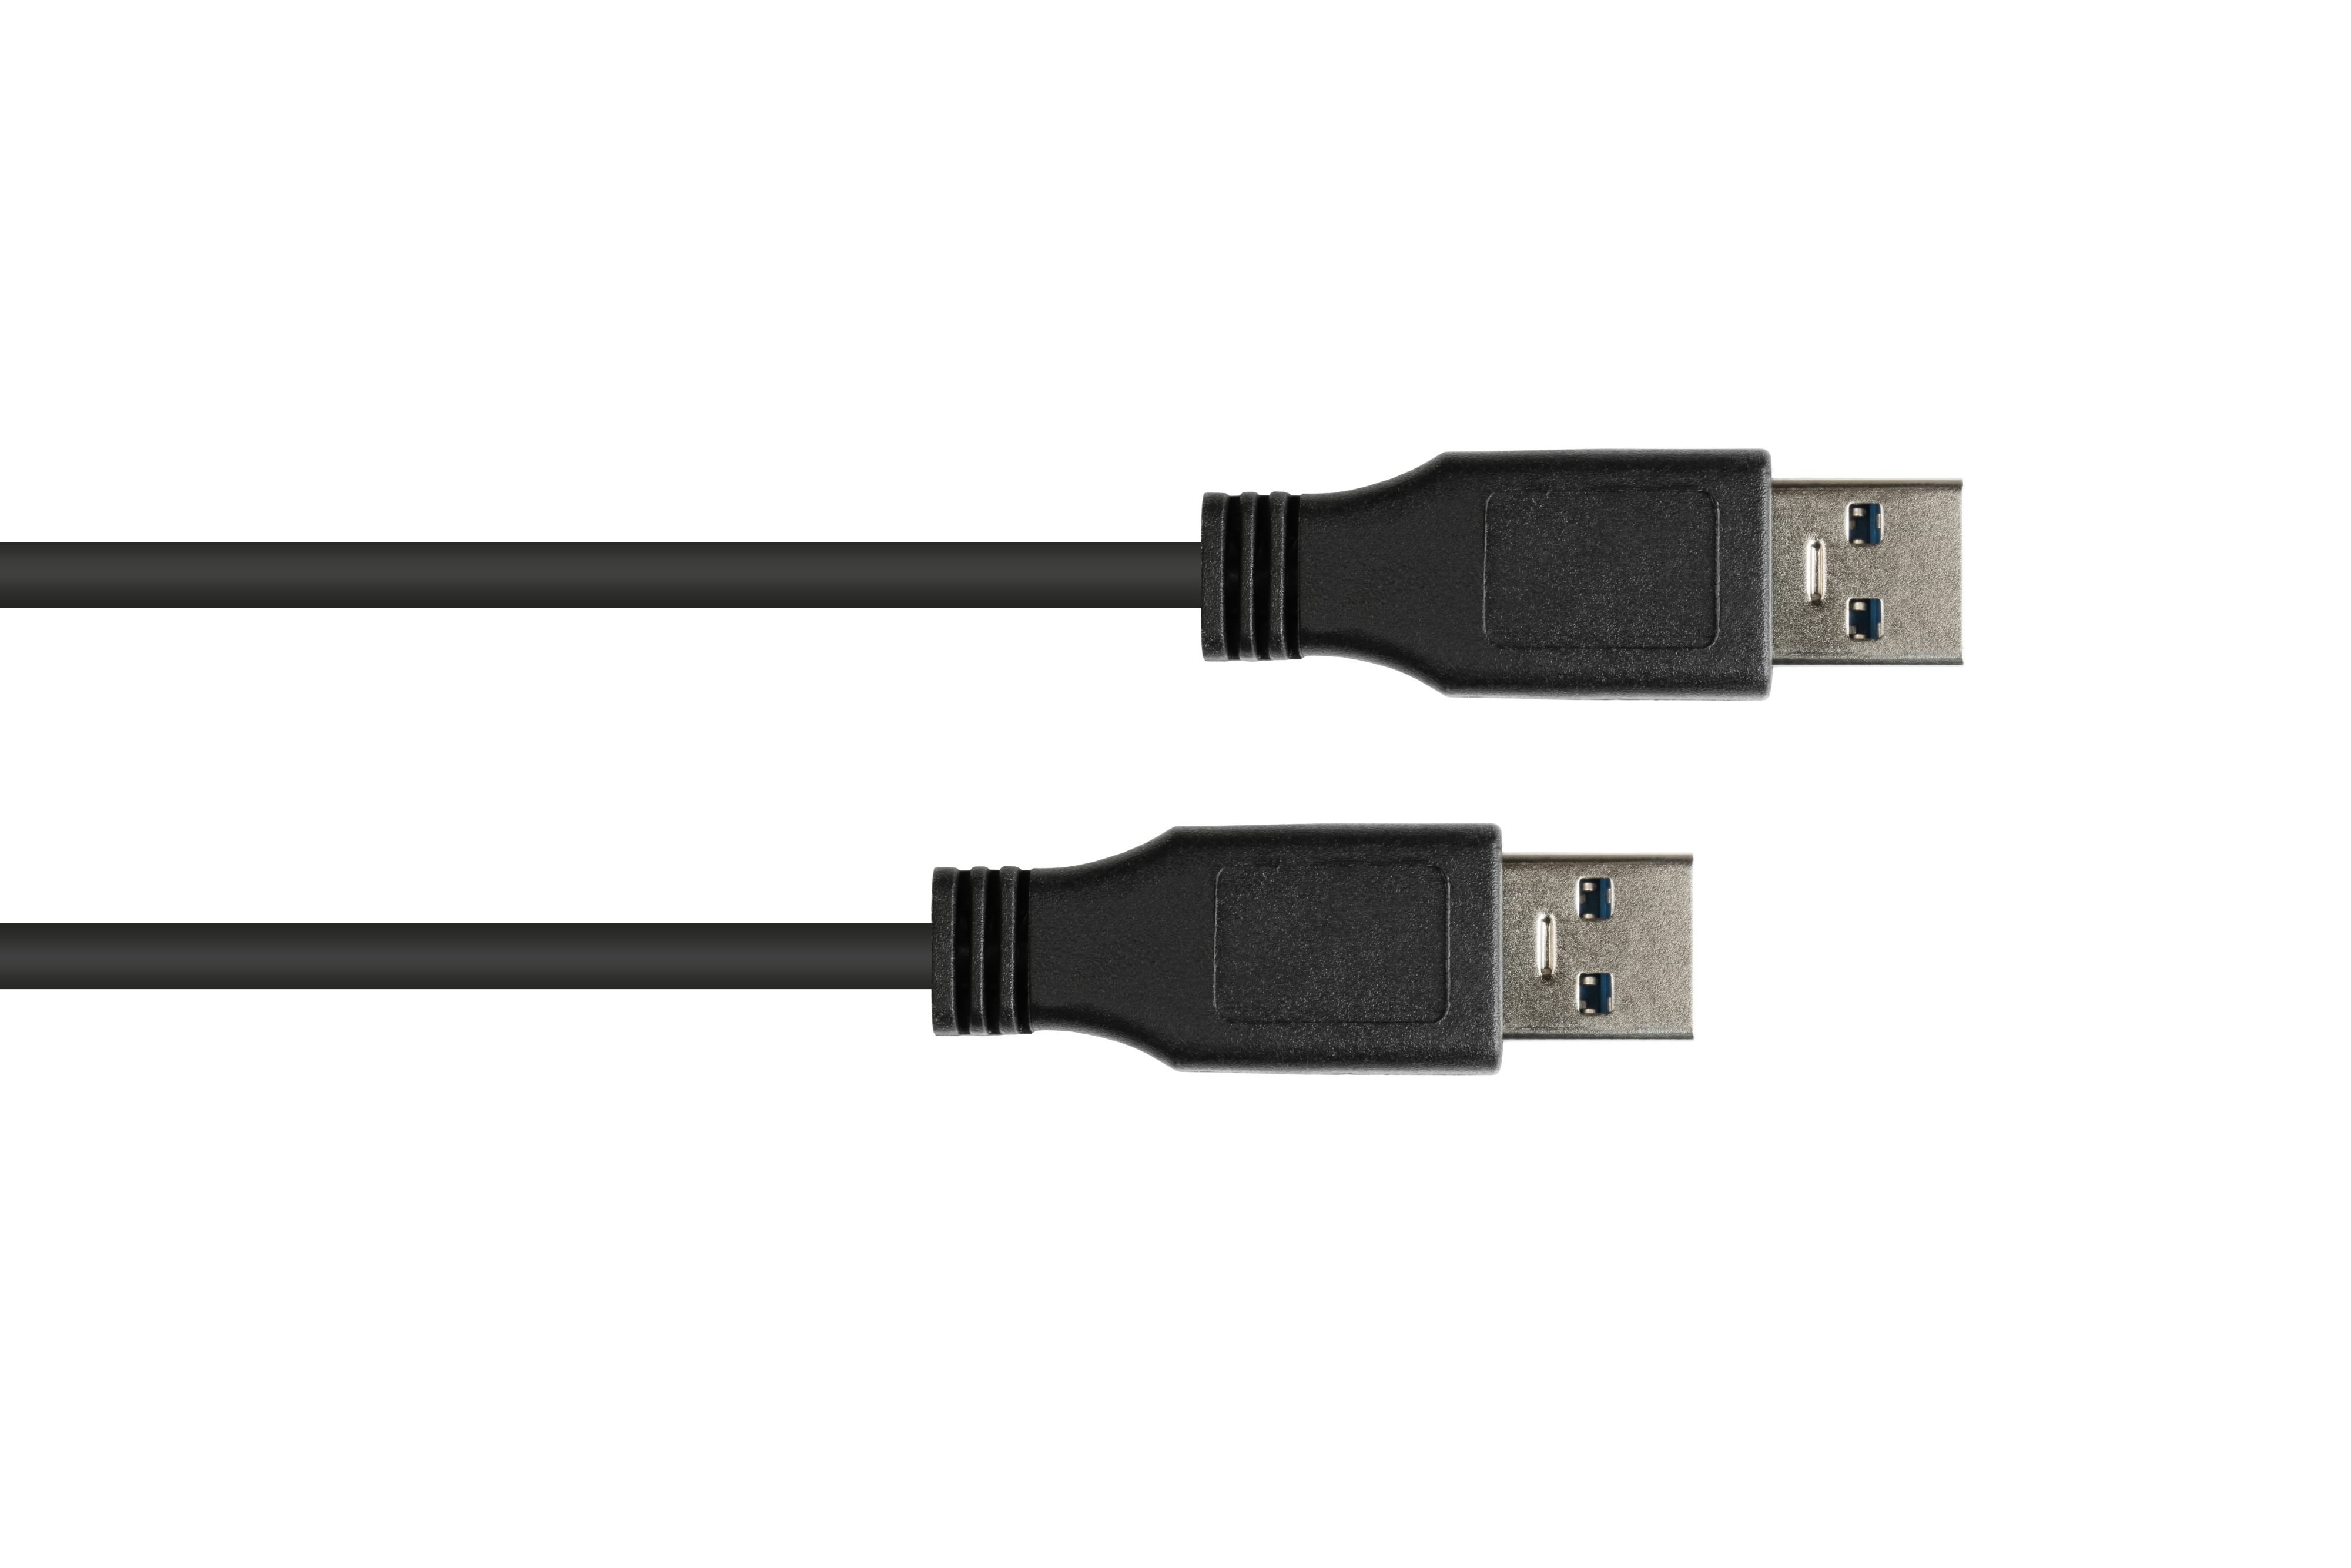 GOOD CONNECTIONS 3.0 Anschlusskabel Stecker A, schwarz an USB Stecker A